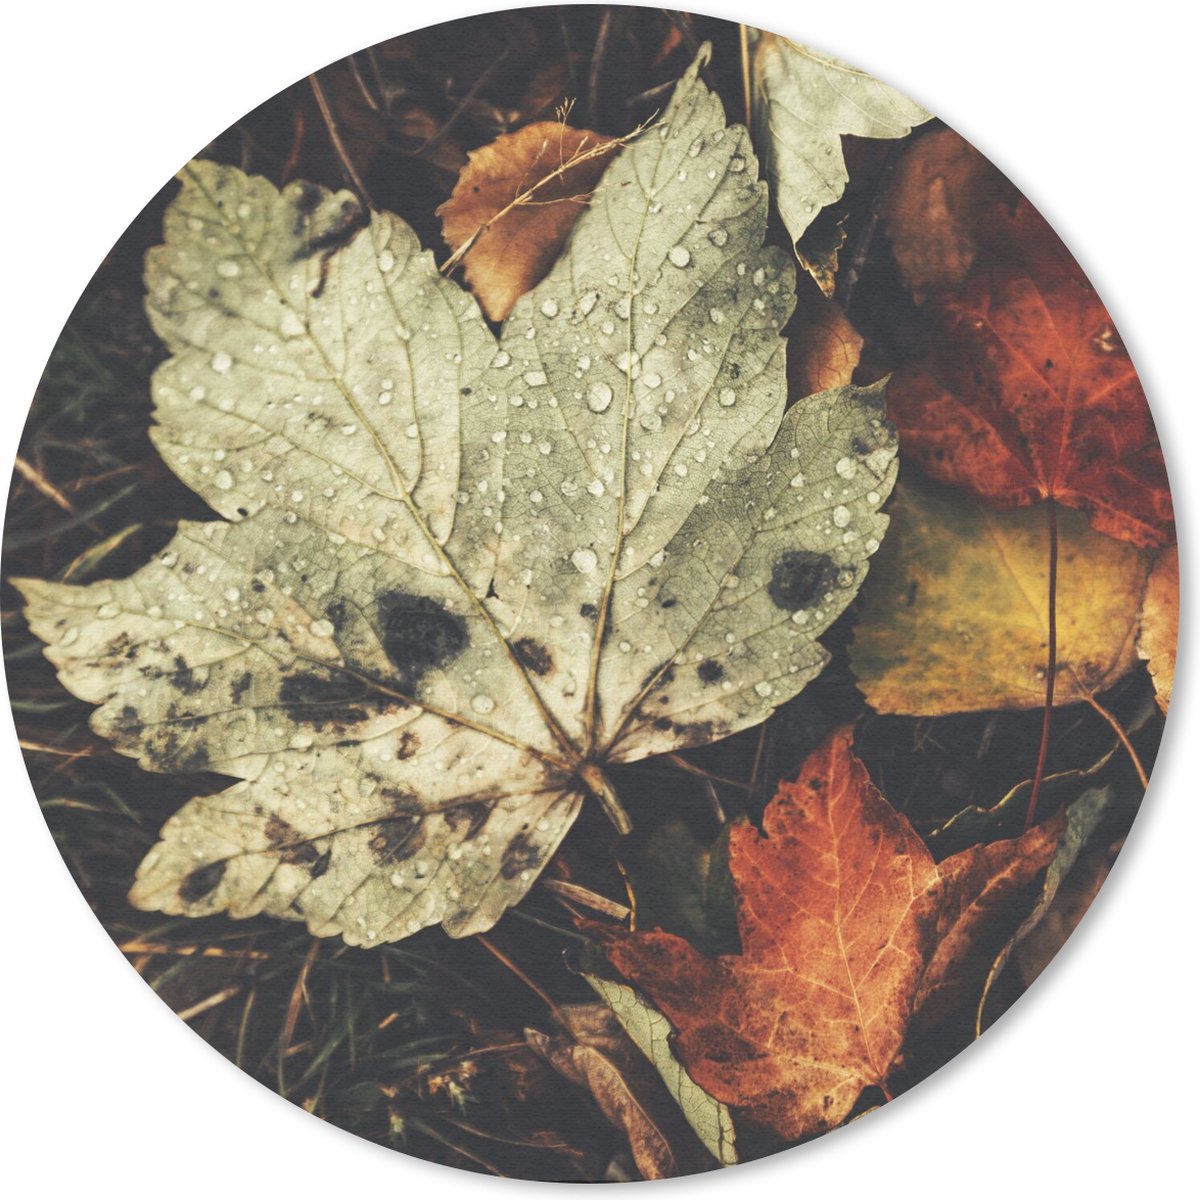 Muismat - Mousepad - Rond - Herfstbladeren - Herfst - Seizoenen - Natuur - 50x50 cm - Ronde muismat